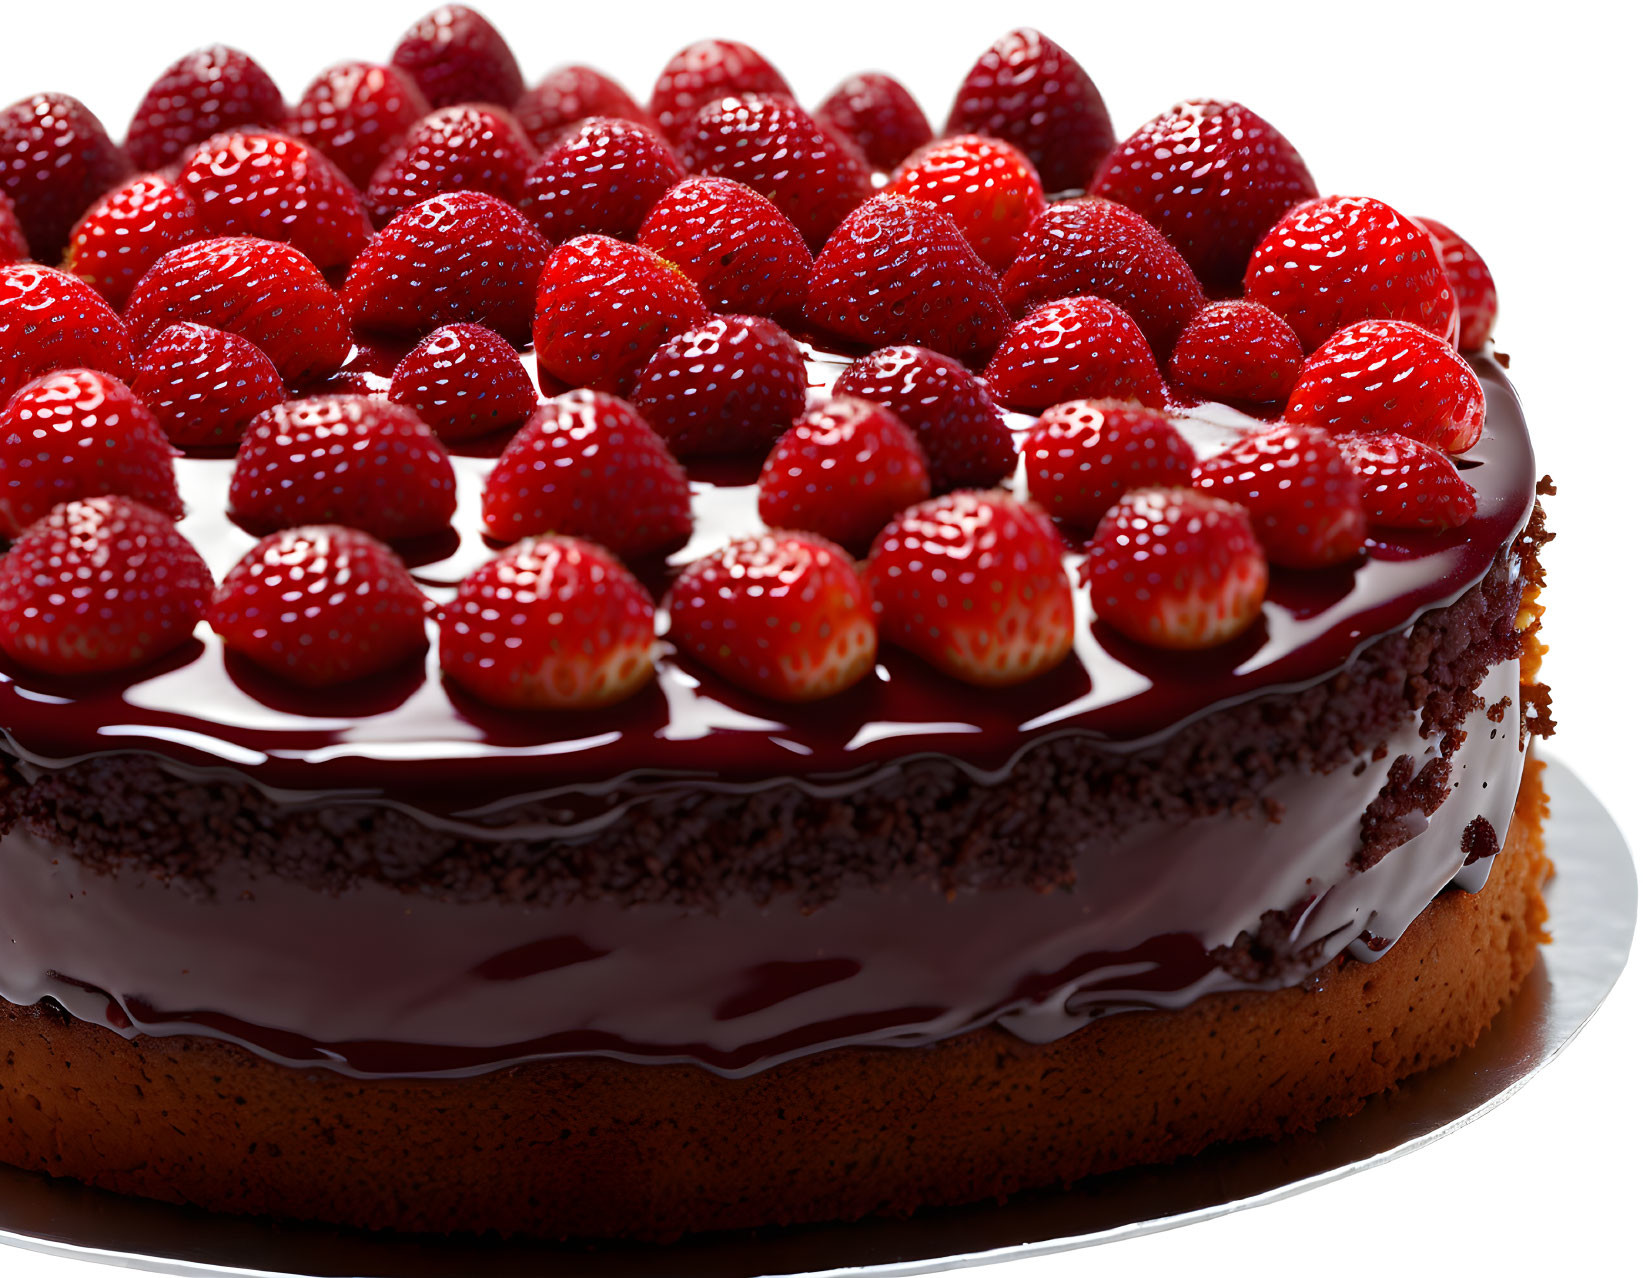 Chocolate Cake with Ganache and Fresh Strawberries